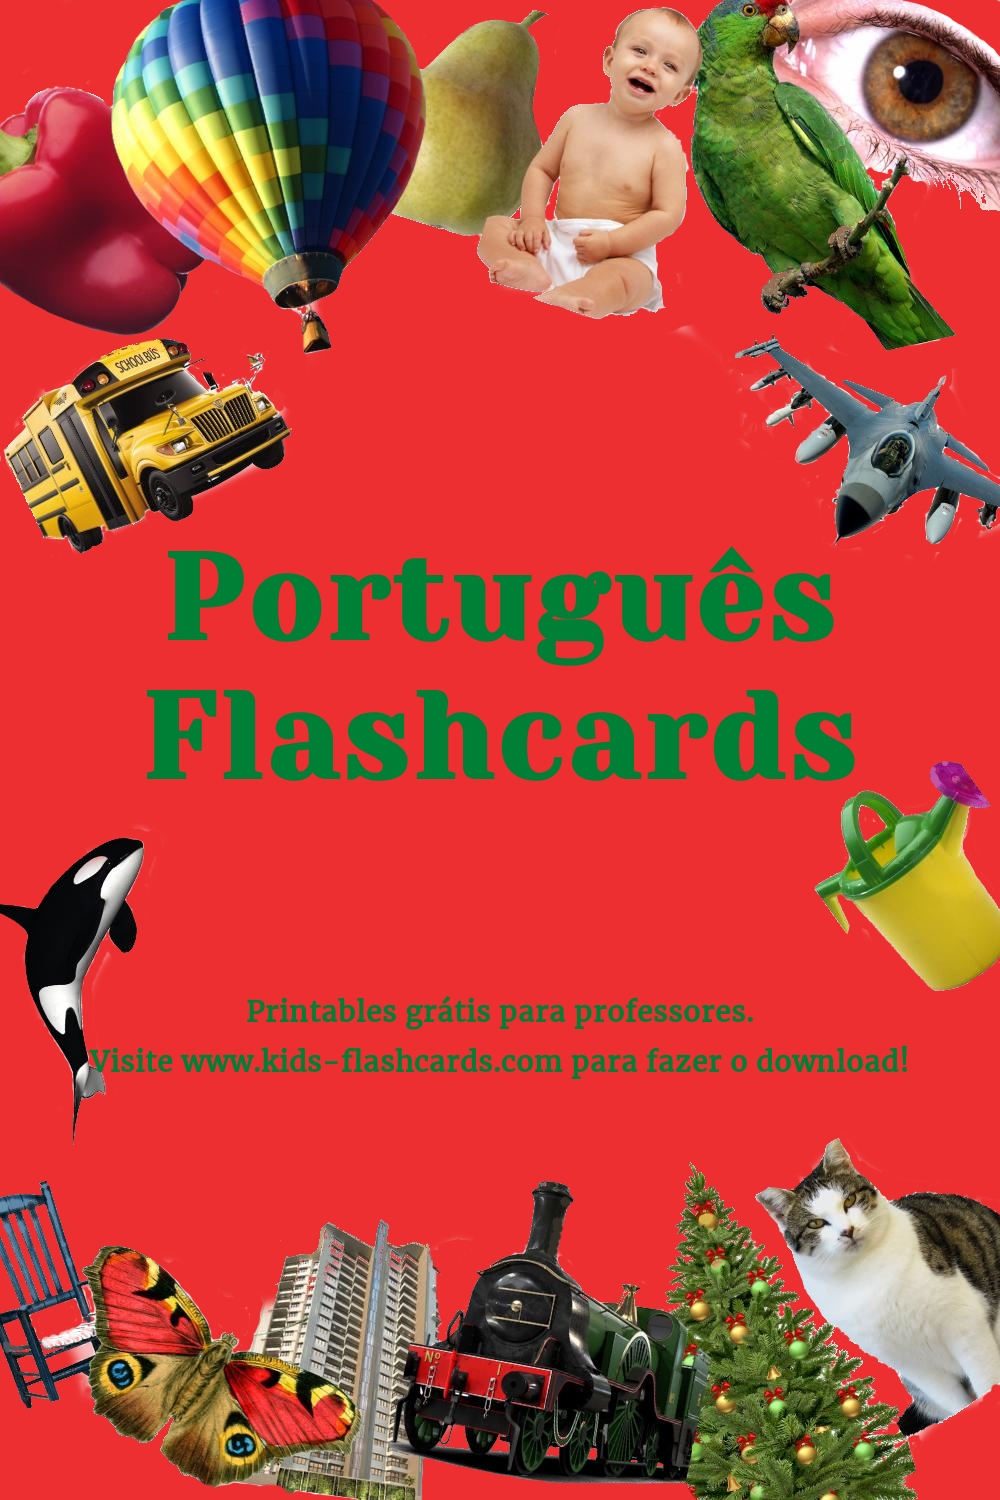 Printables em Português grátis